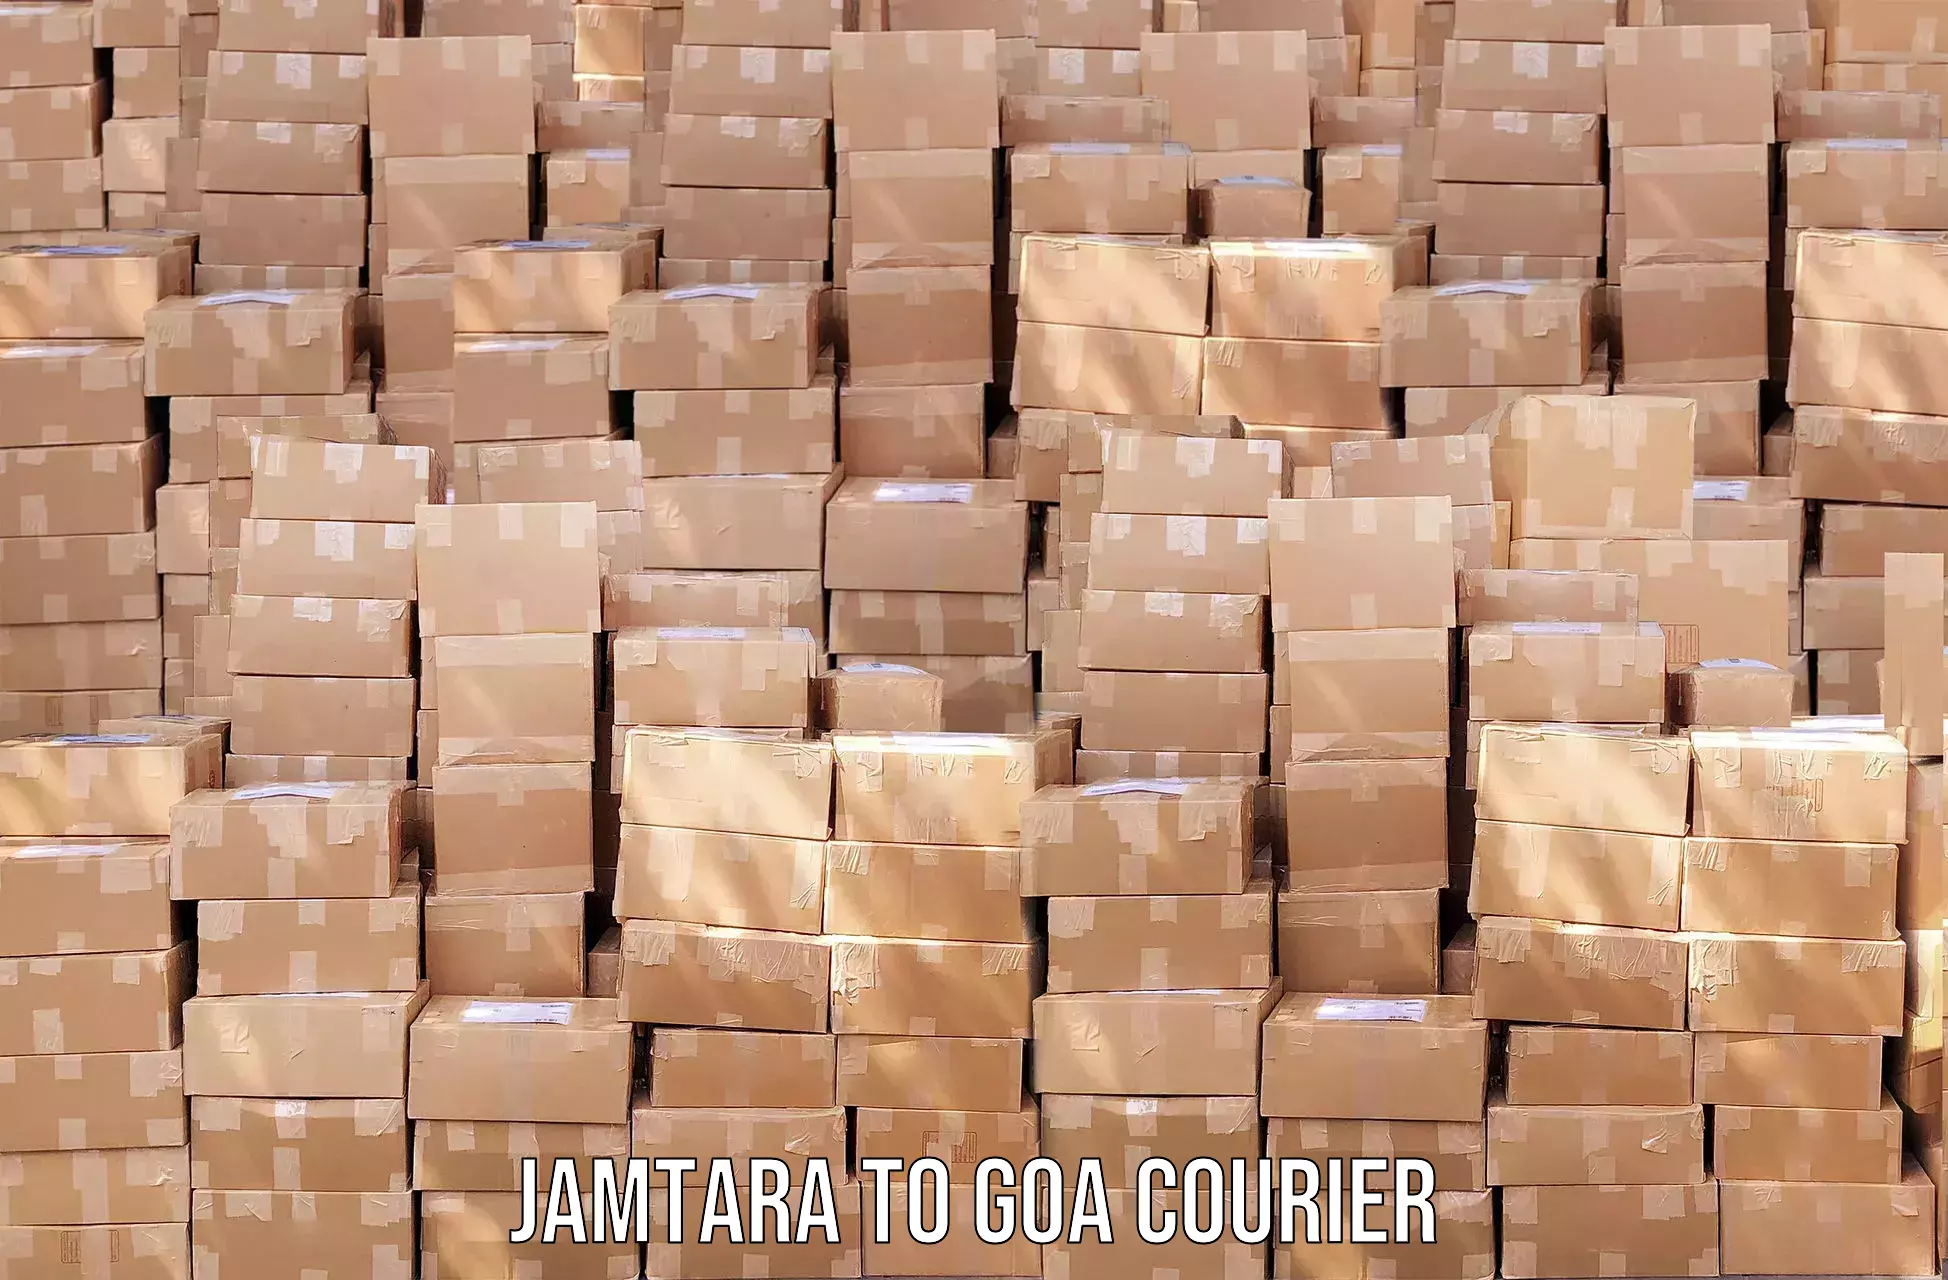 Courier app Jamtara to Goa